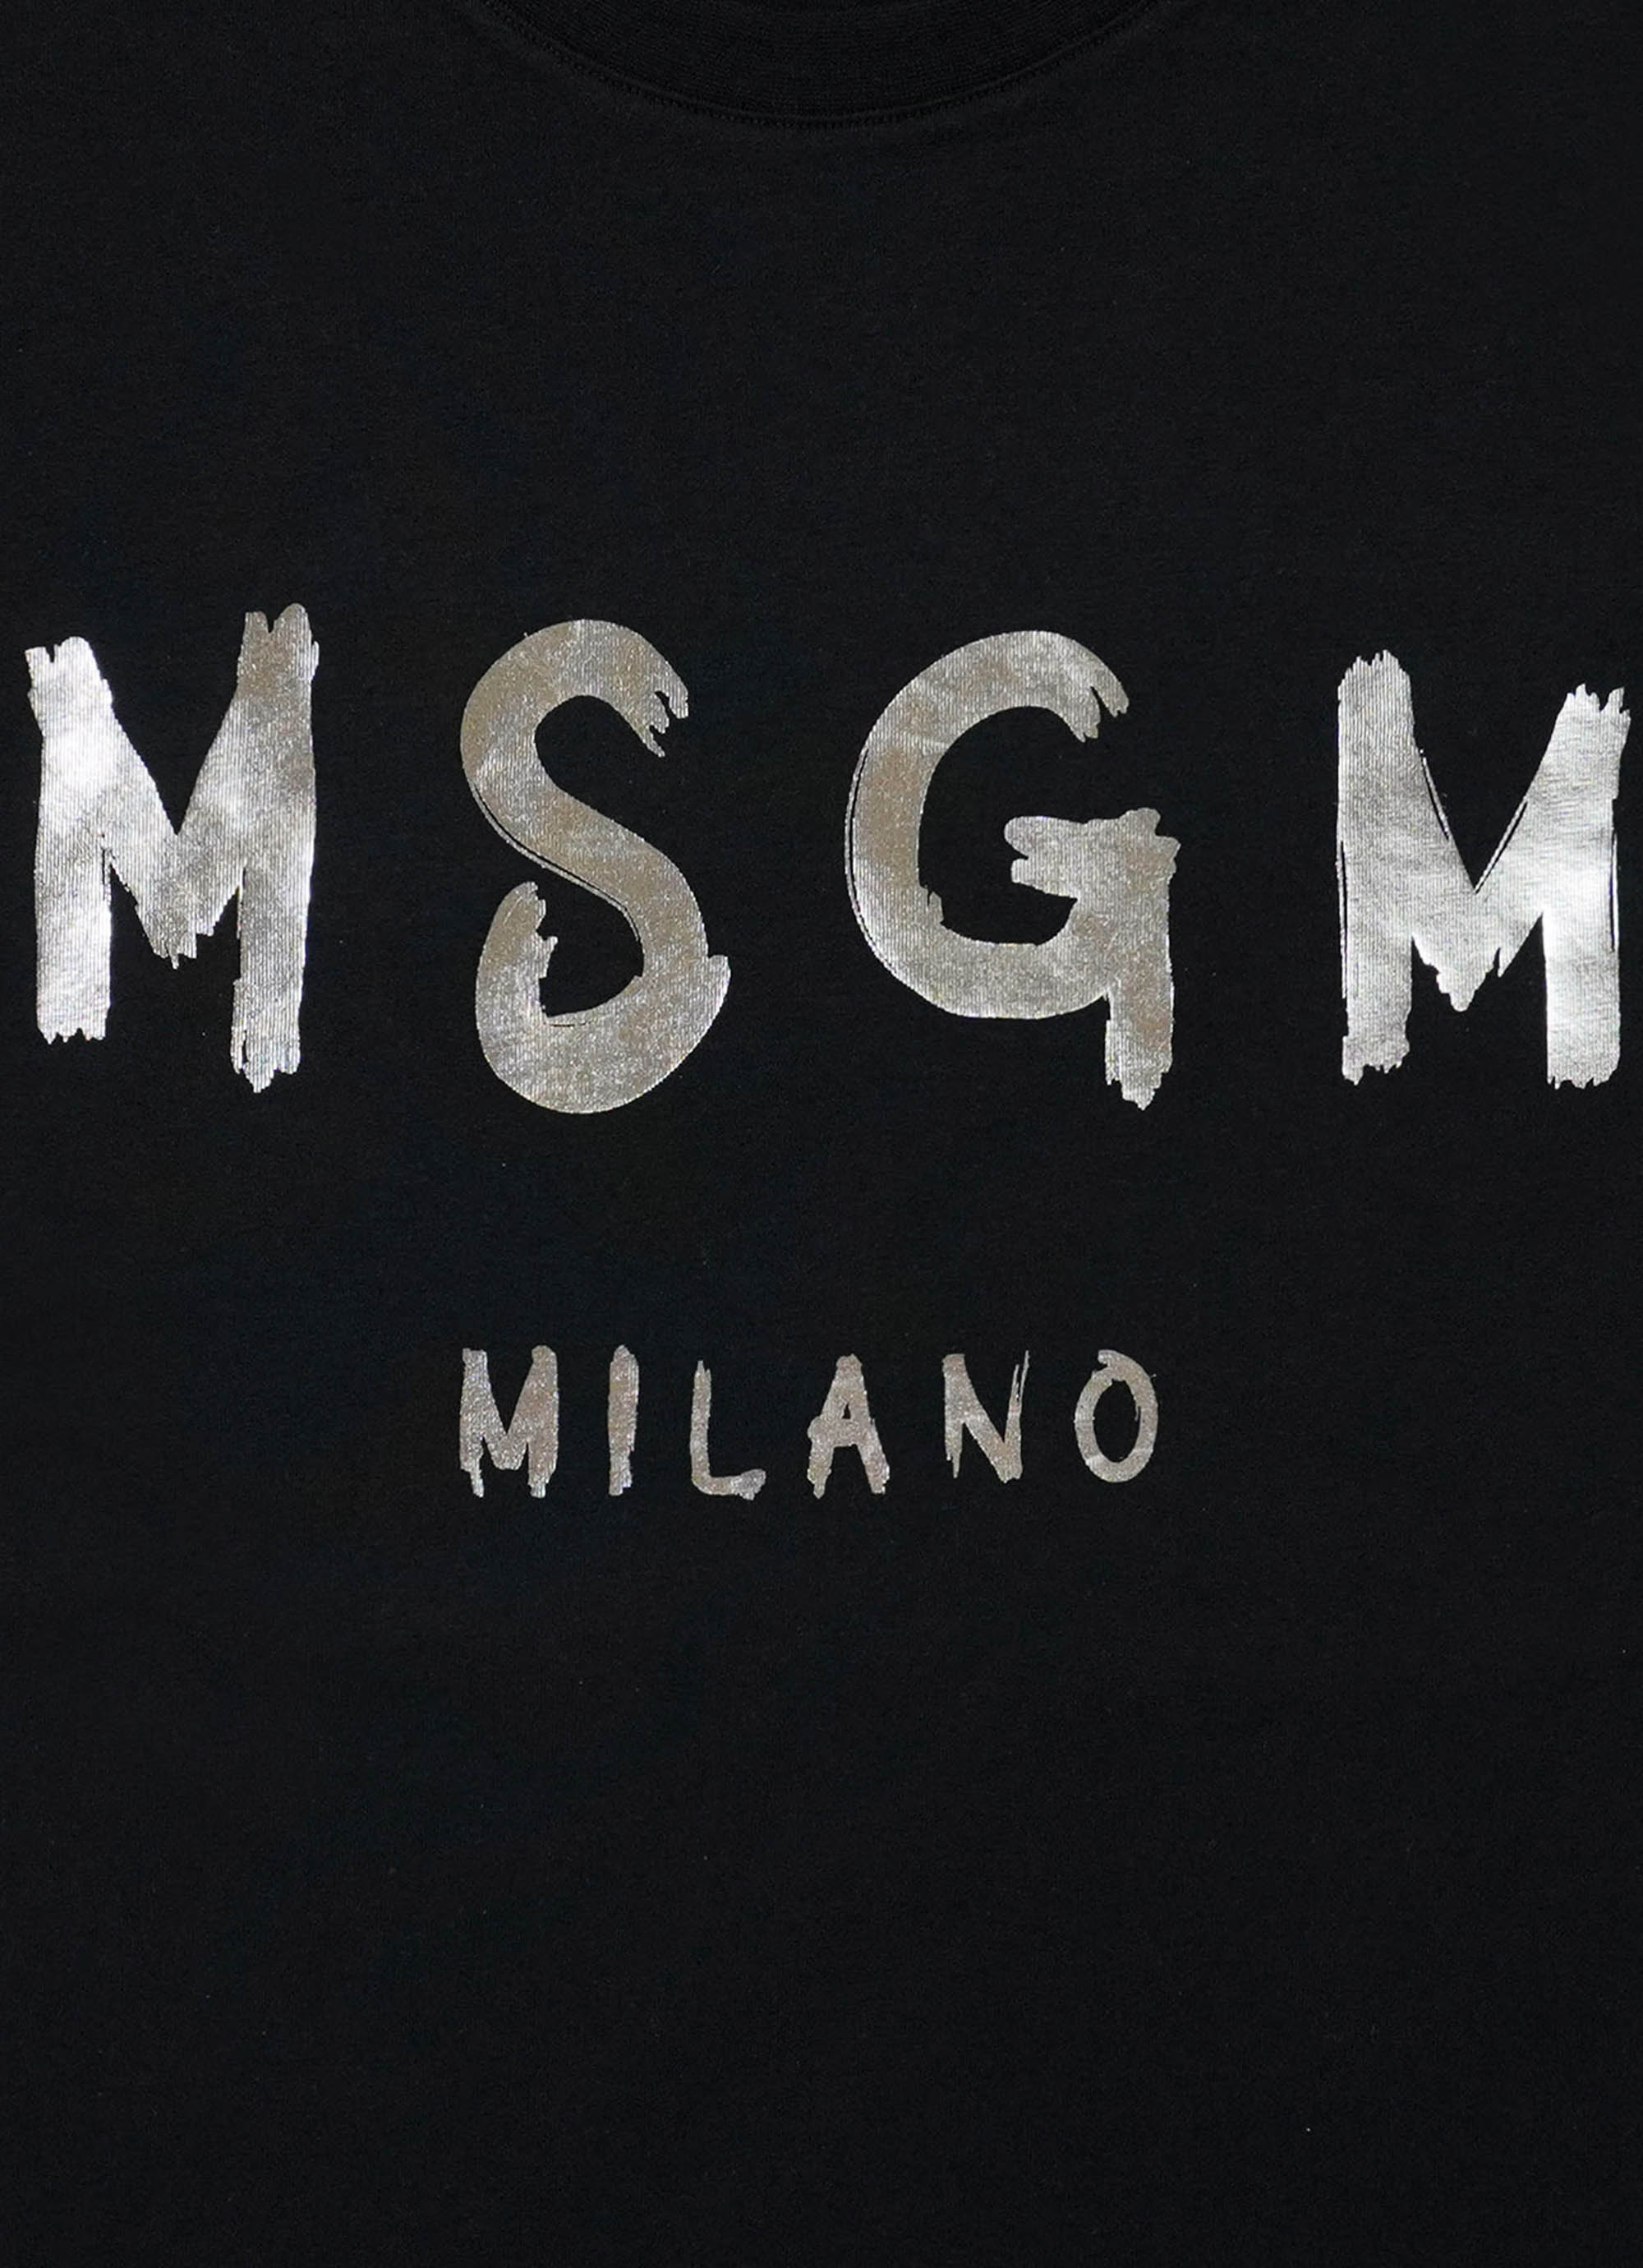 MSGM ブラッシュロゴ Tシャツ【Japan Exclusive/FOIL PRINT】 詳細画像 ブラック×シルバー 3